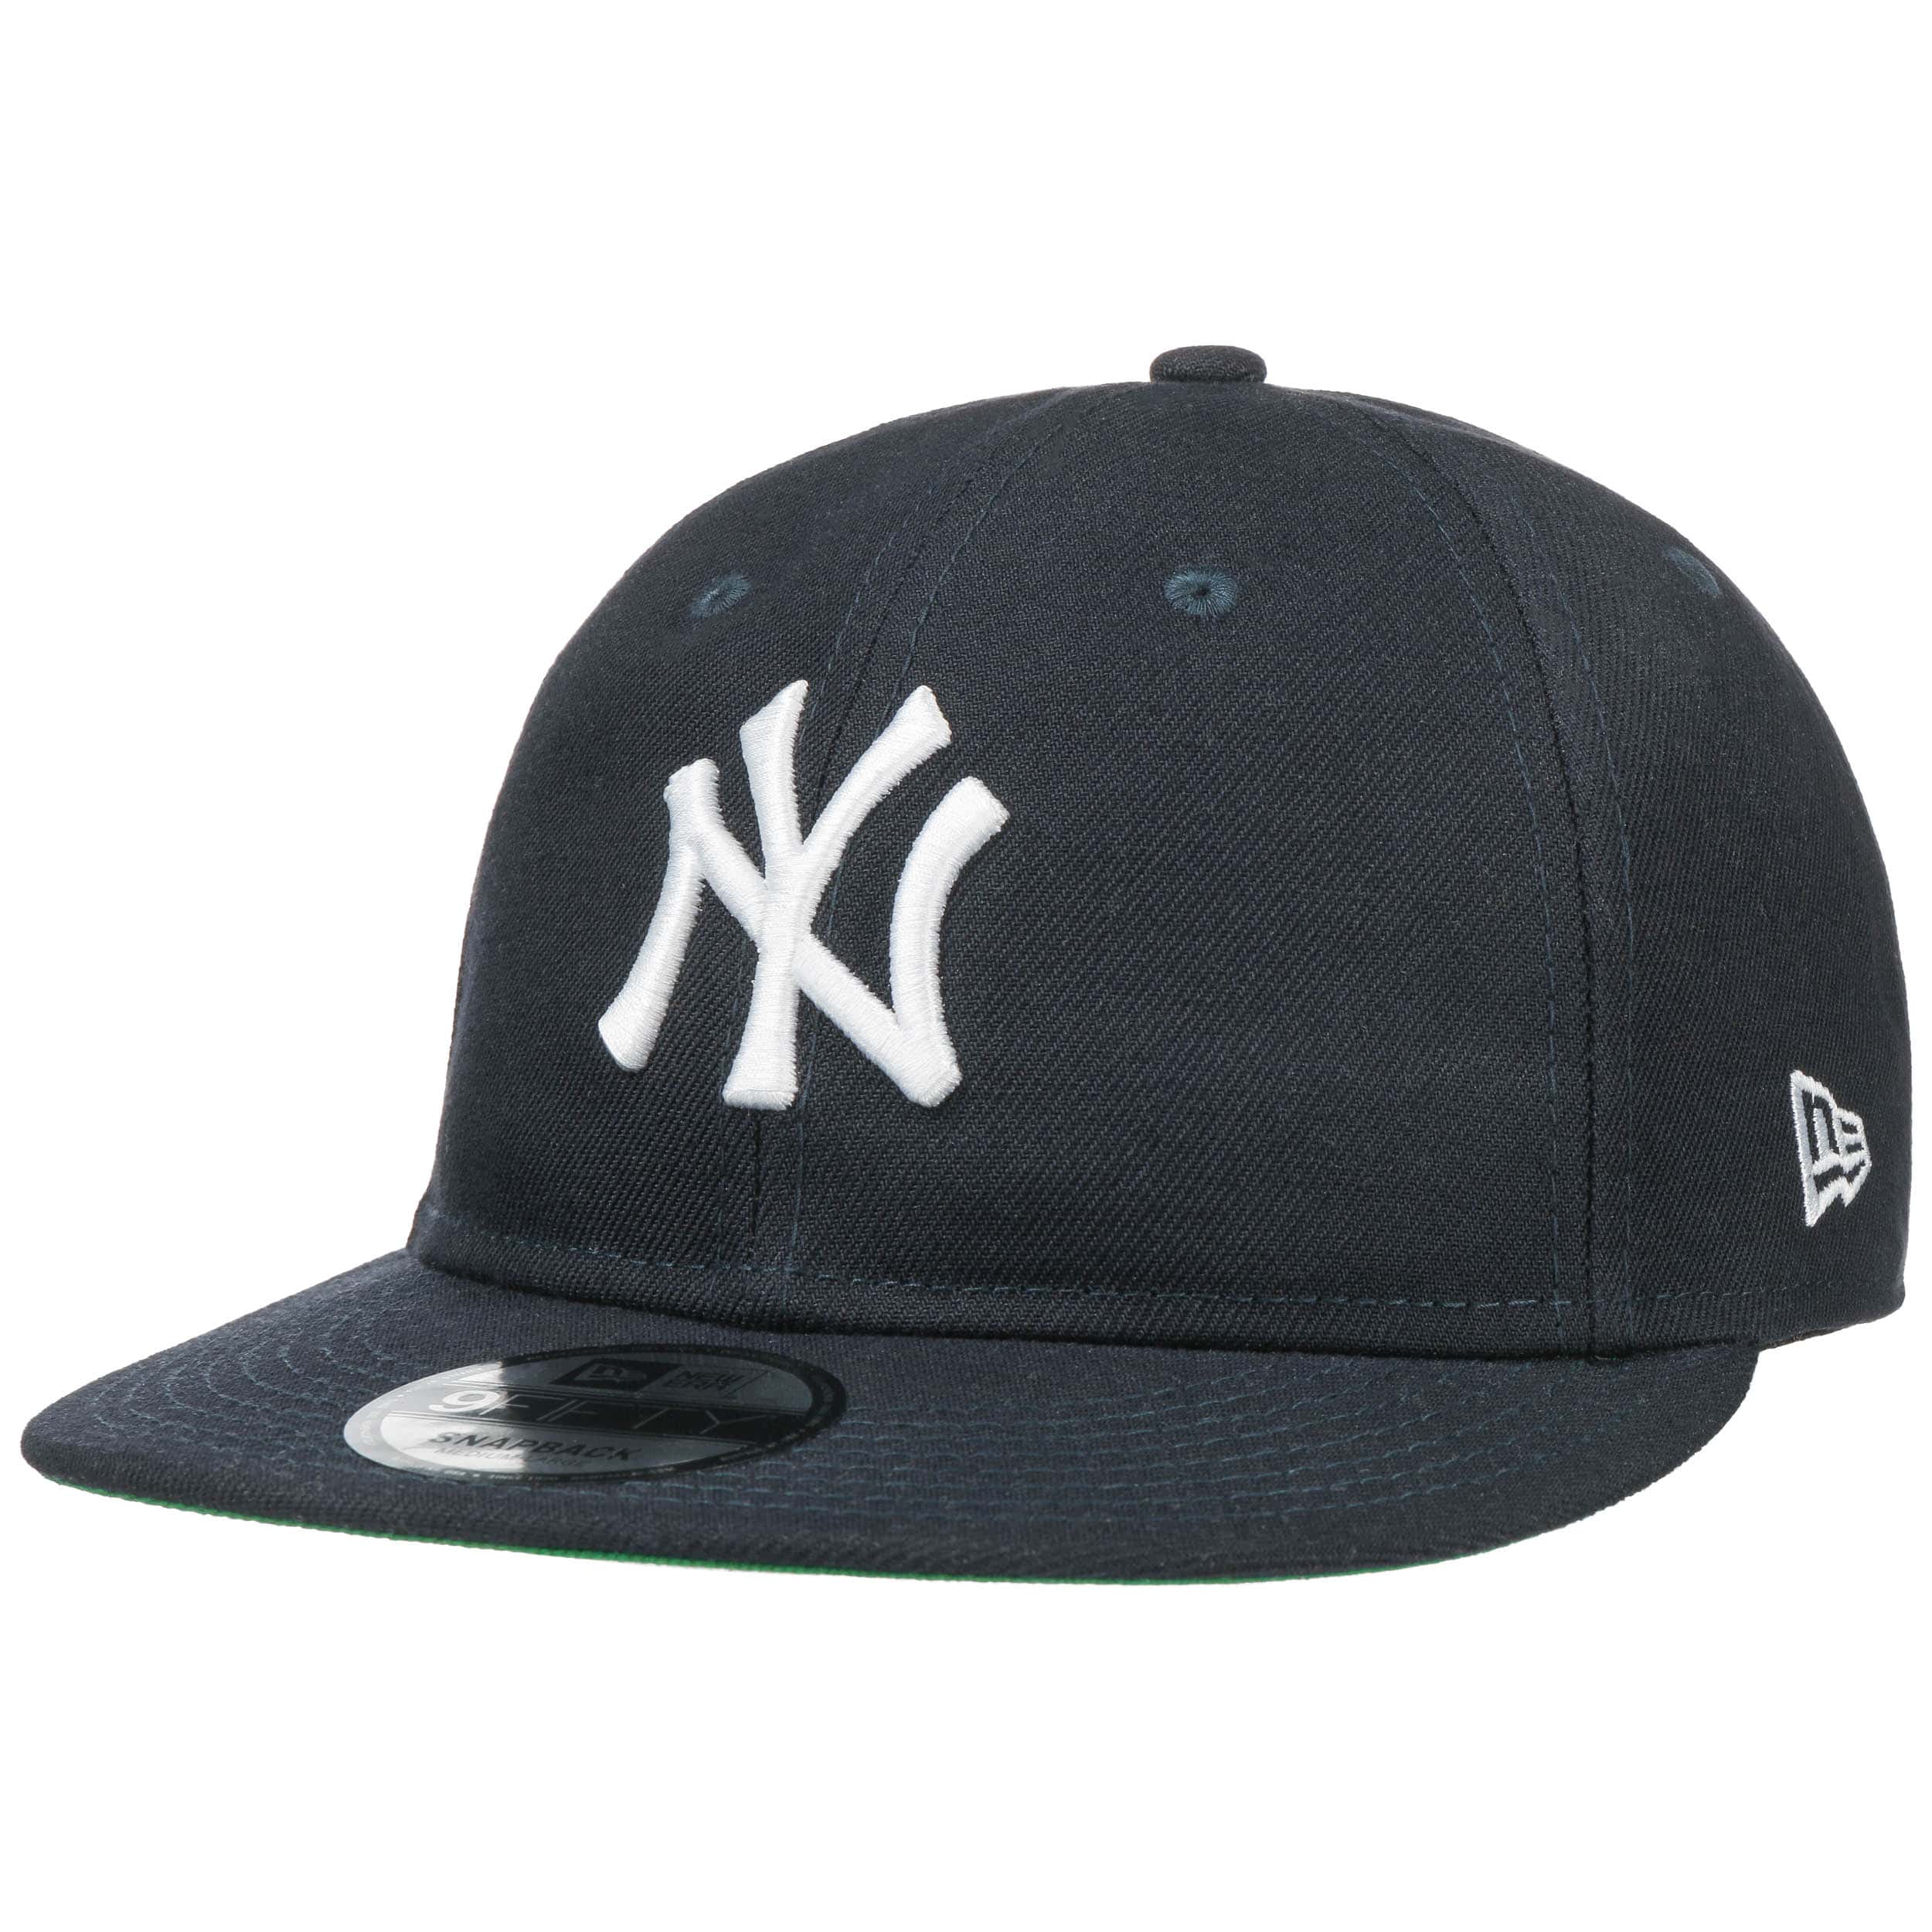 New Era 9Fifty Snapback Cap RETRO NY Yankees sky blue S/M 